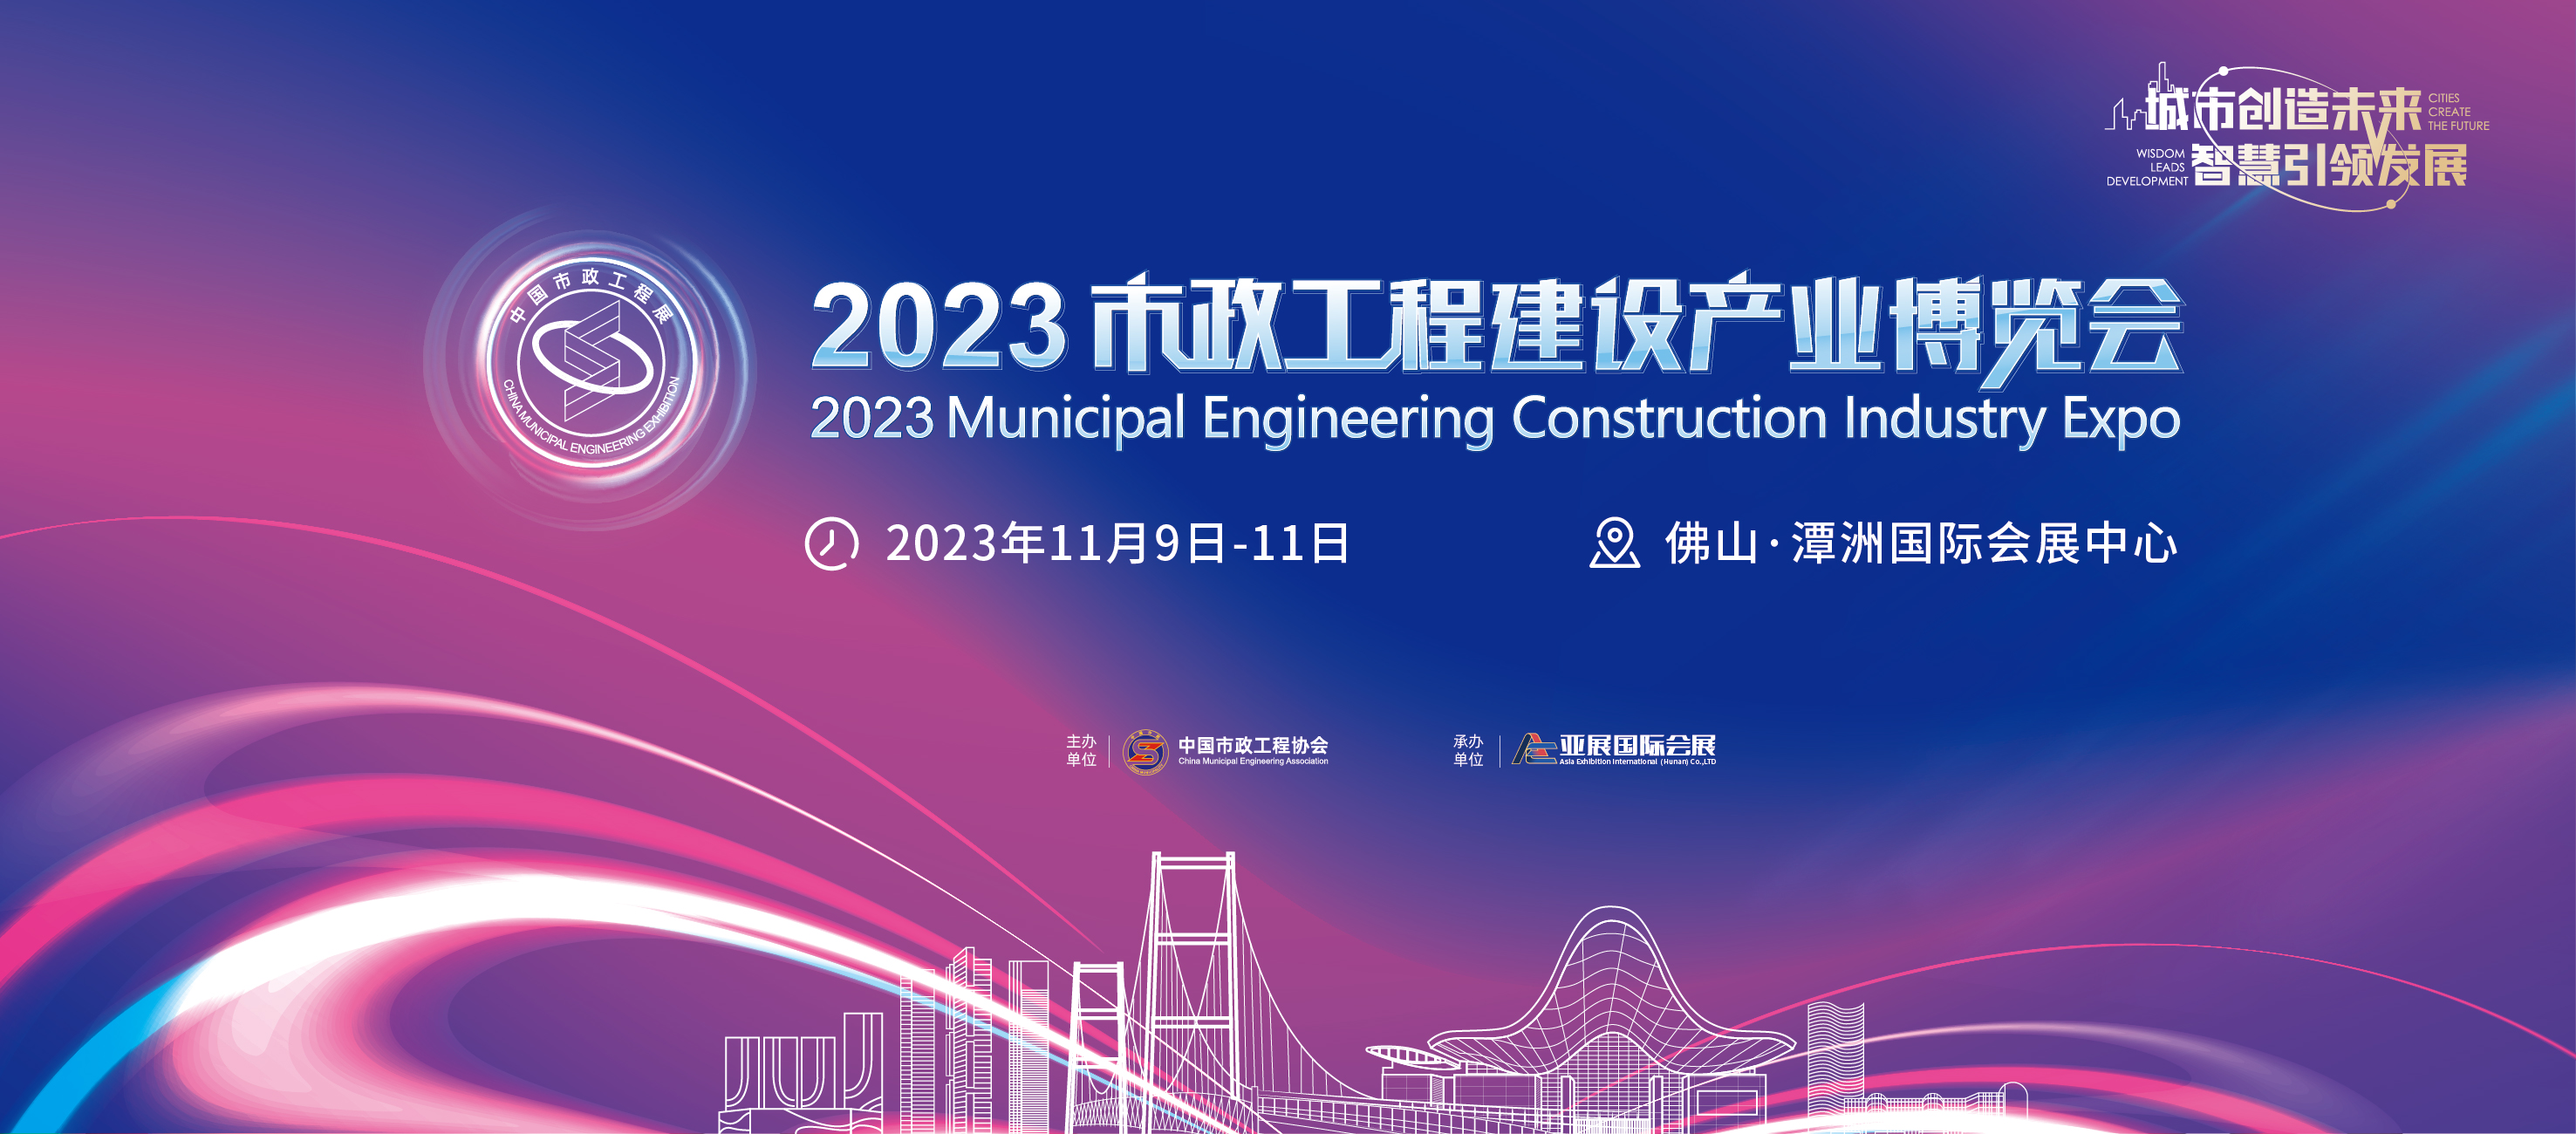 2023全国市政展-佛山市政工程建设展览会-2024长沙市政工程建设展览会